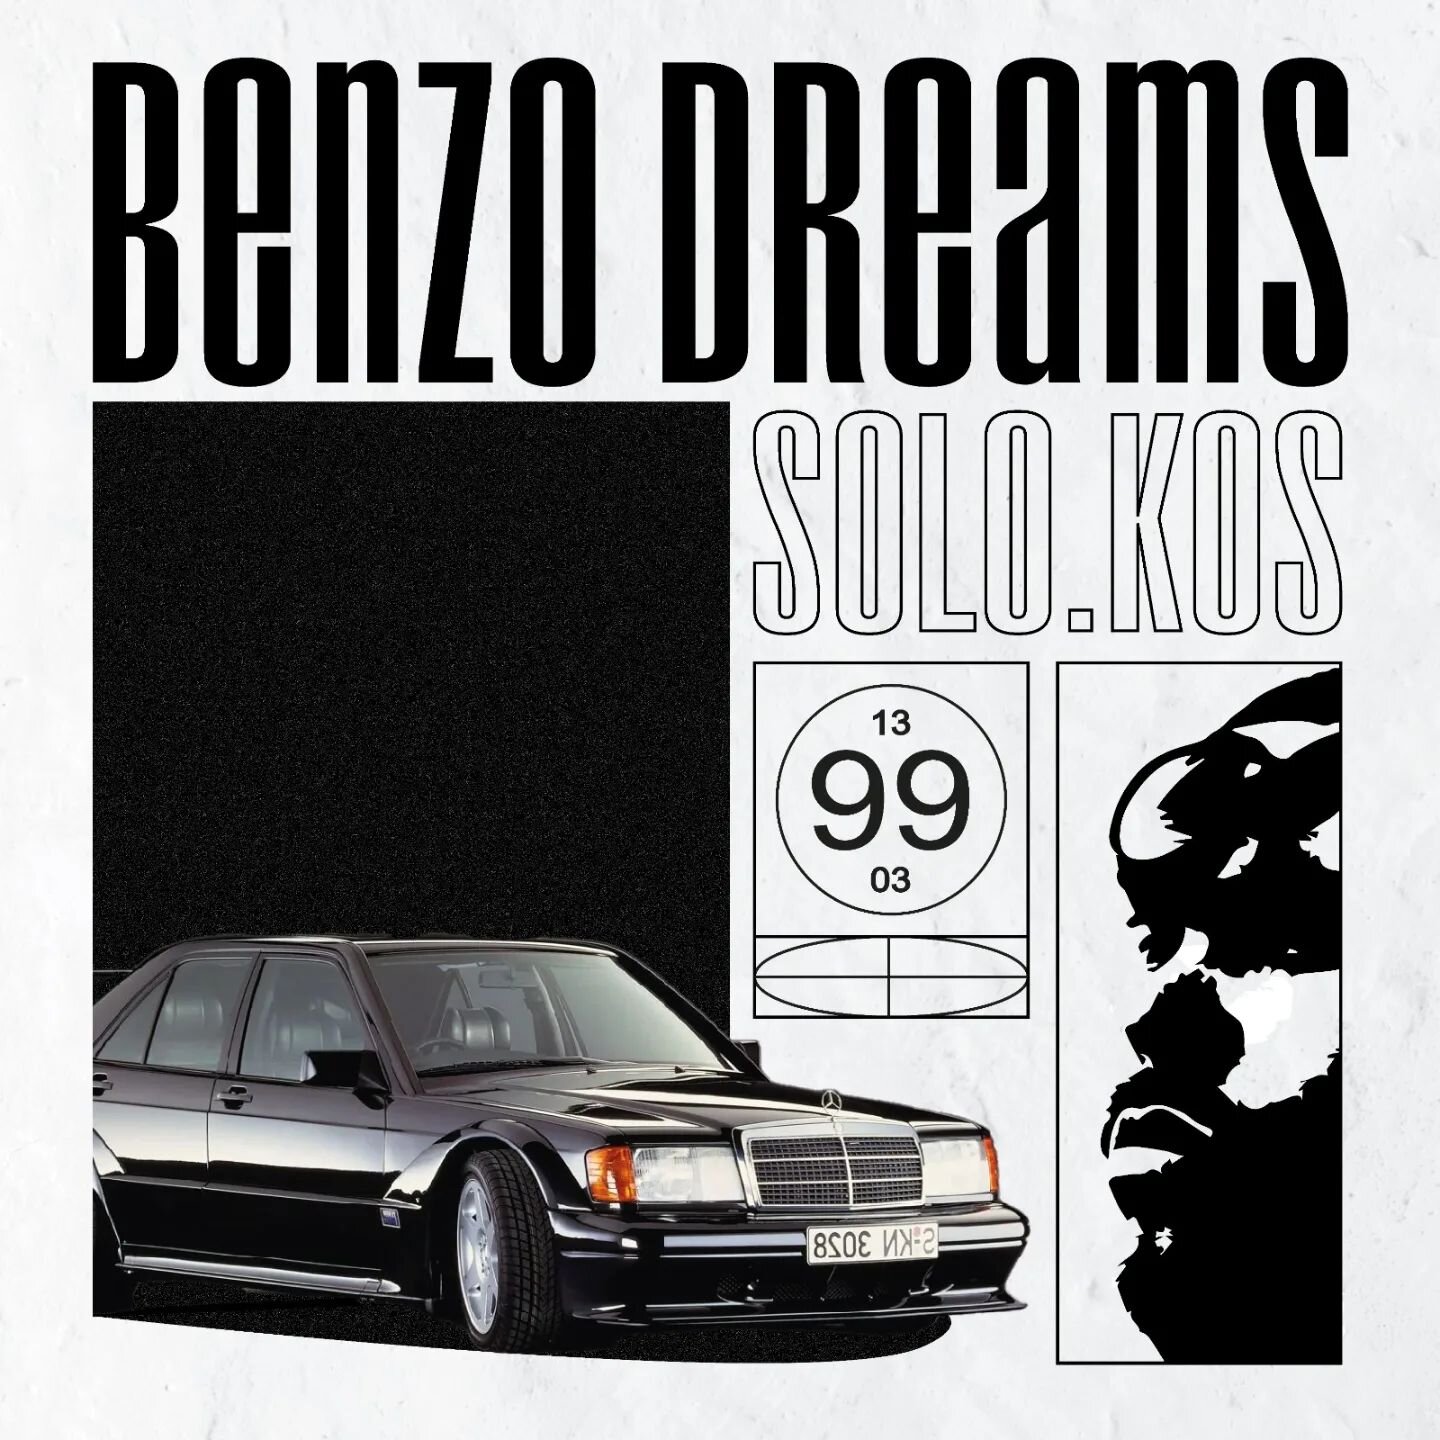 Benzo_dreams_solo_k.os